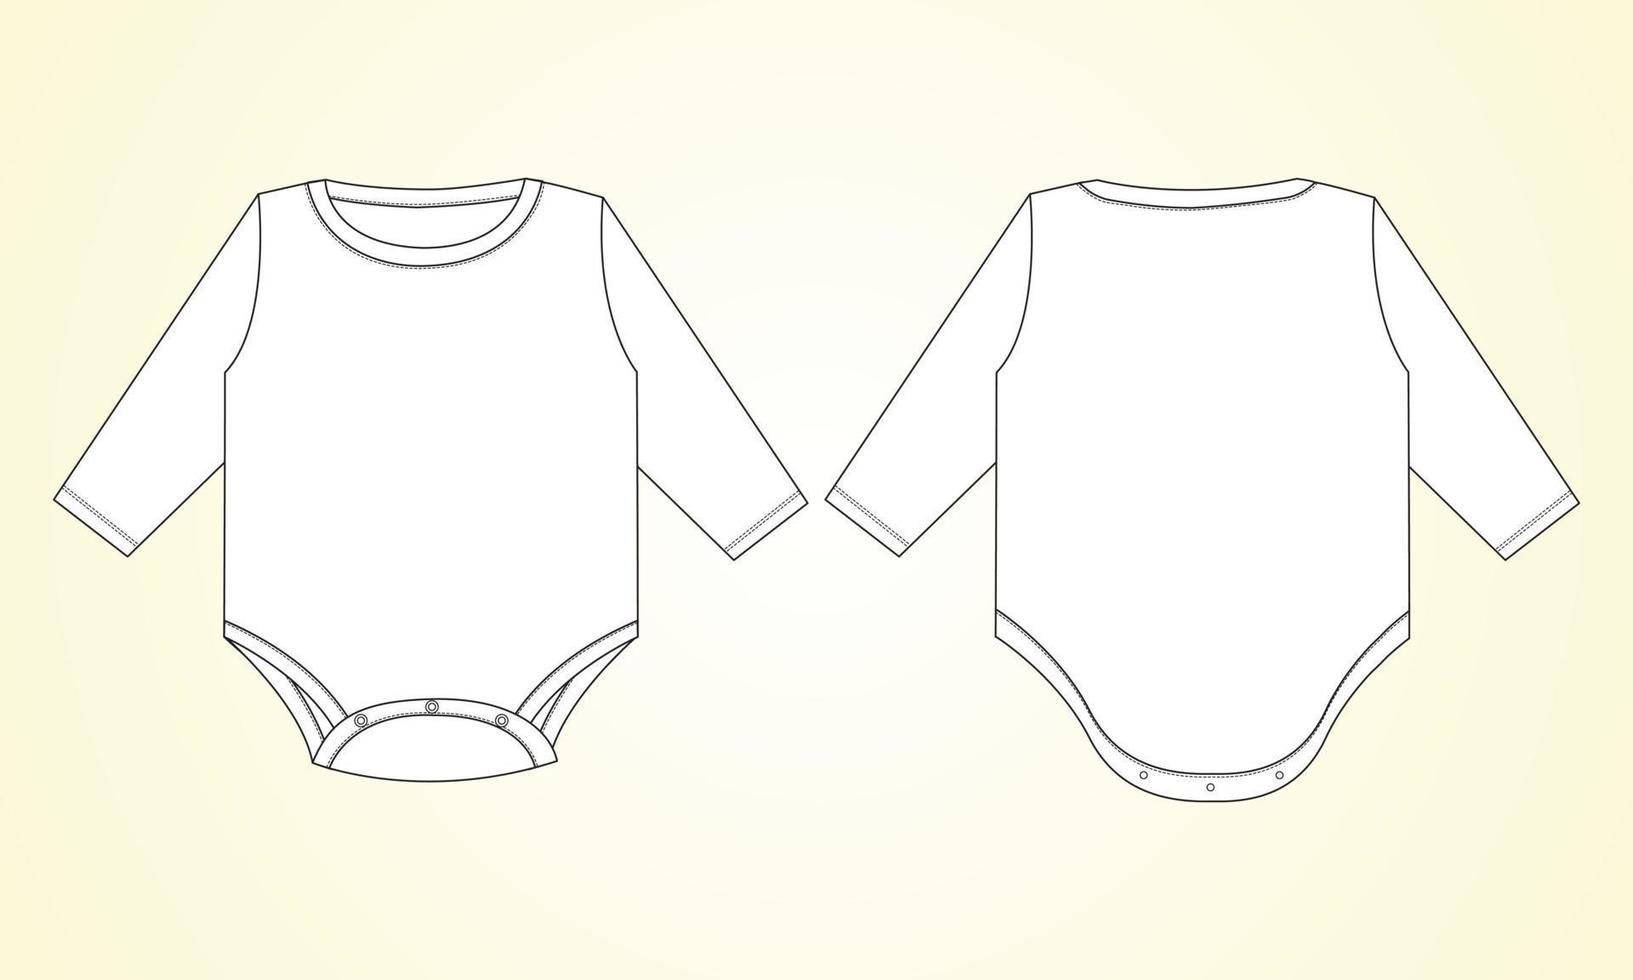 långärmad baby romper övergripande tekniska mode platt skiss ritning vektor illustration mall framifrån och bakifrån. kläder design mock up för flicka. barnklänningsdesign lätt redigerbar.